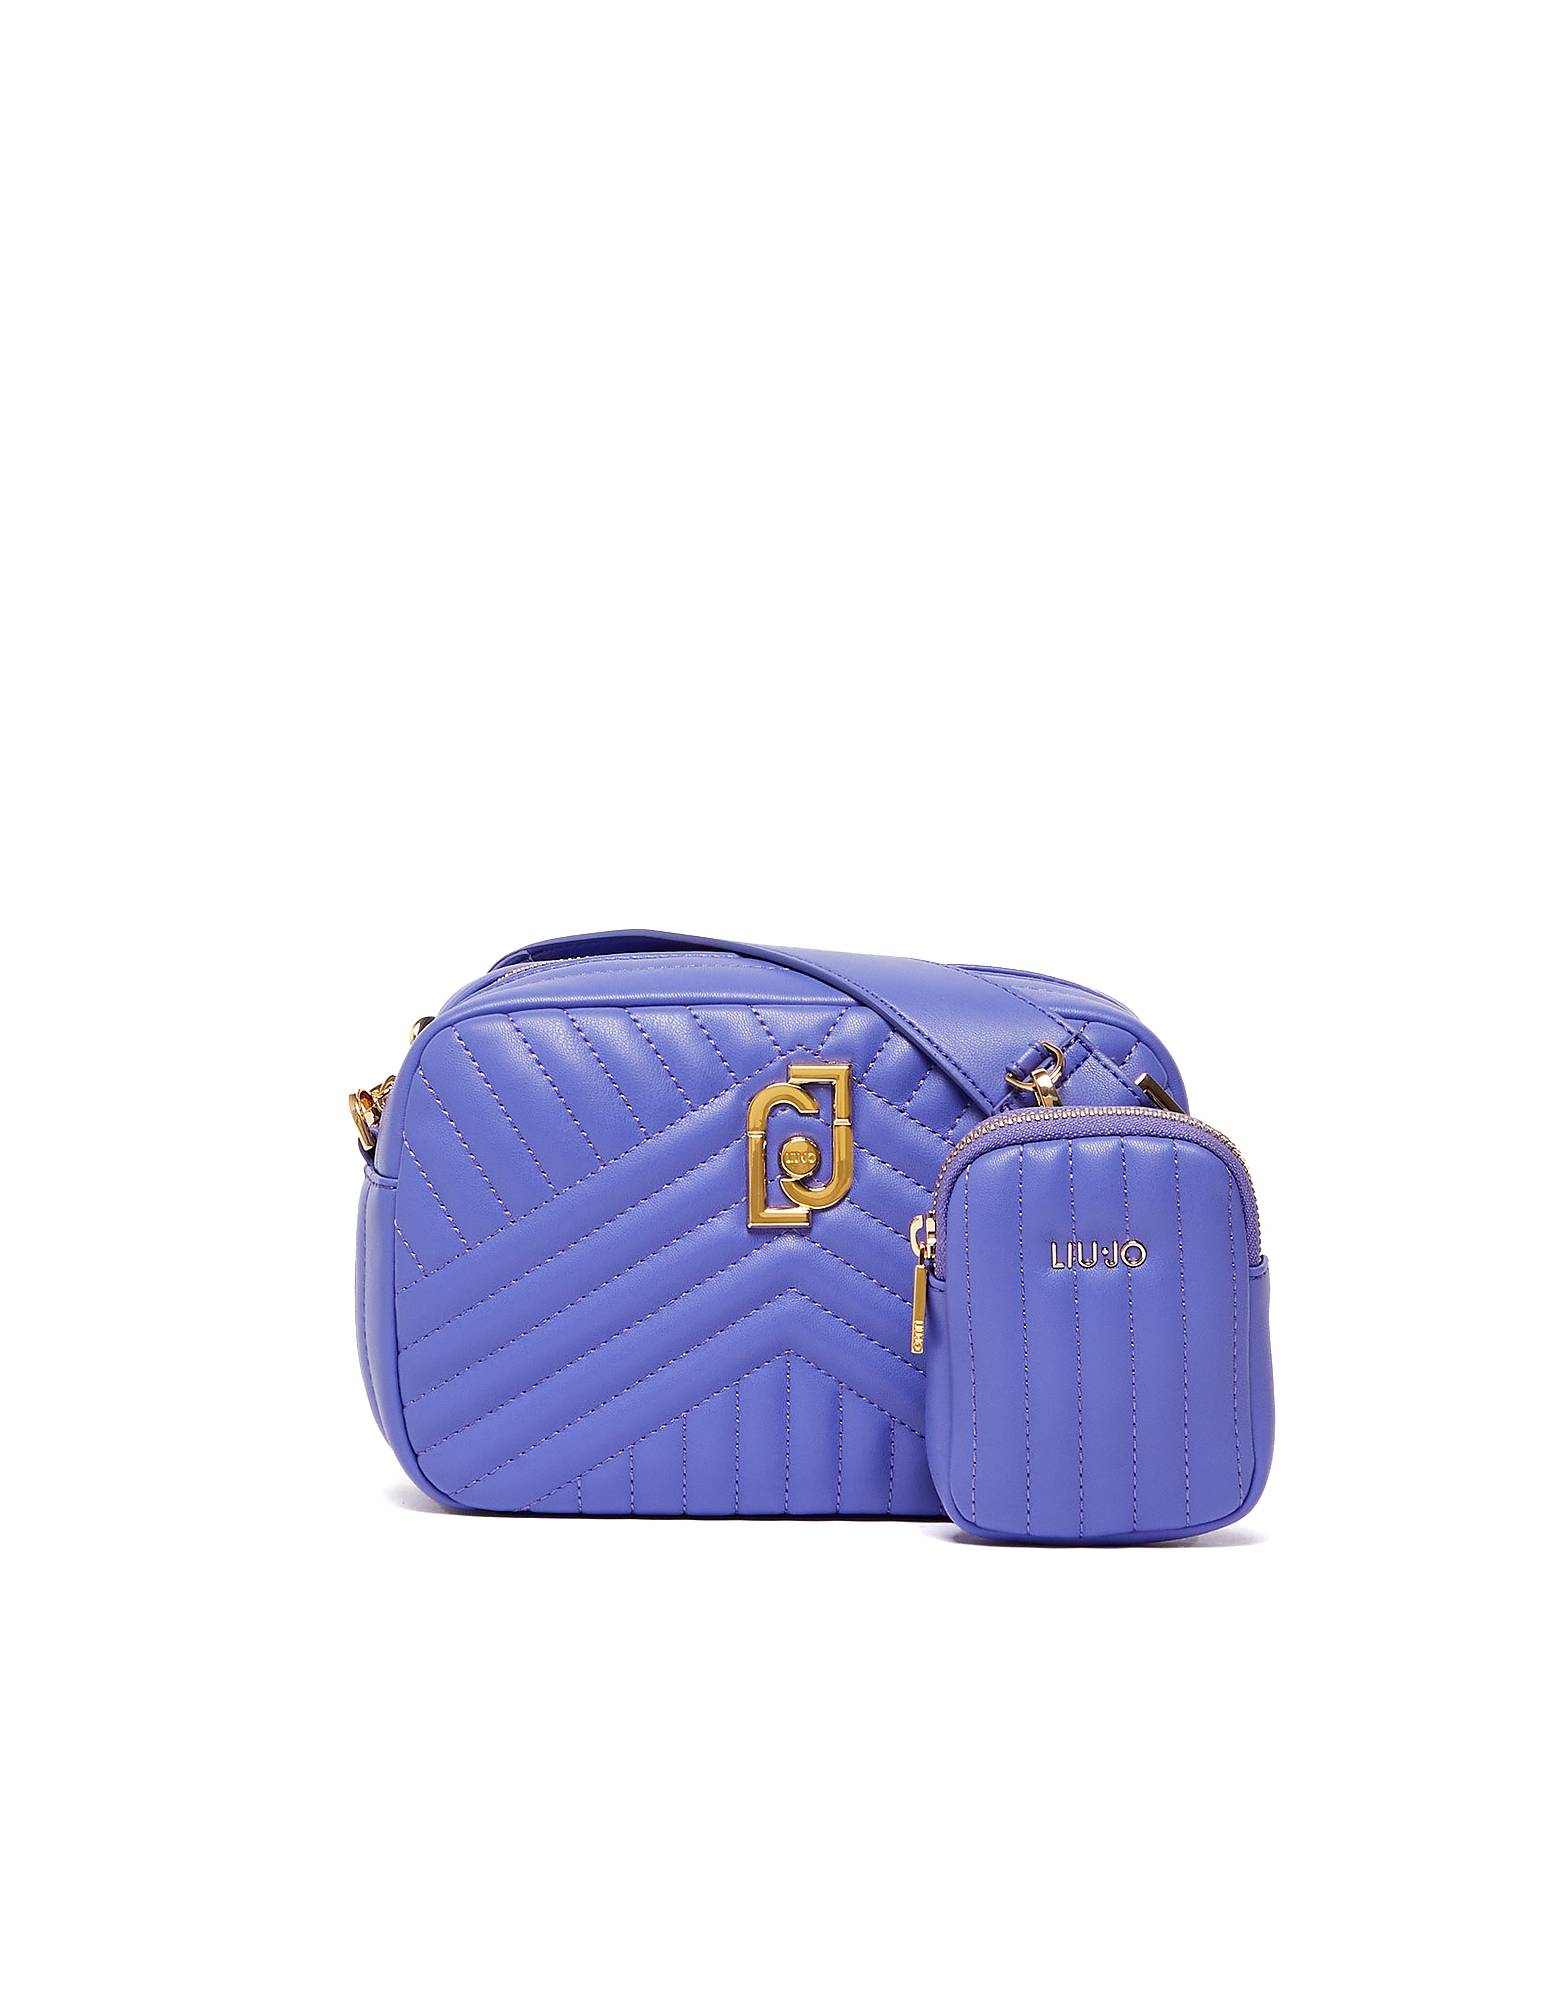 Liu •jo Designer Handbags Women's Purple Bag In Rose